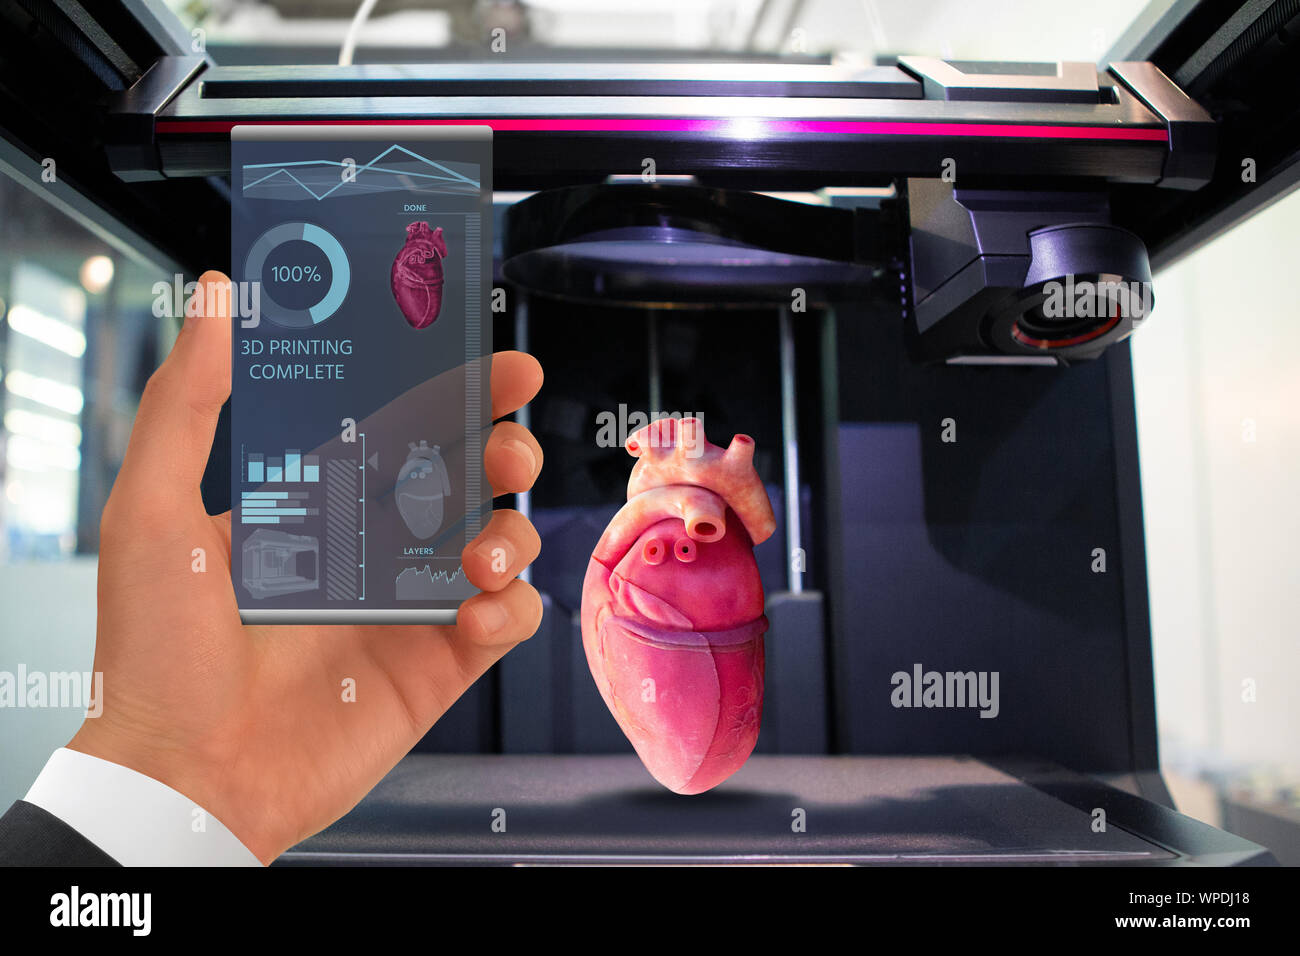 La main avec futuristic smartphone transparent. Demande d'impression d'organes humains dans une imprimante 3D. Banque D'Images